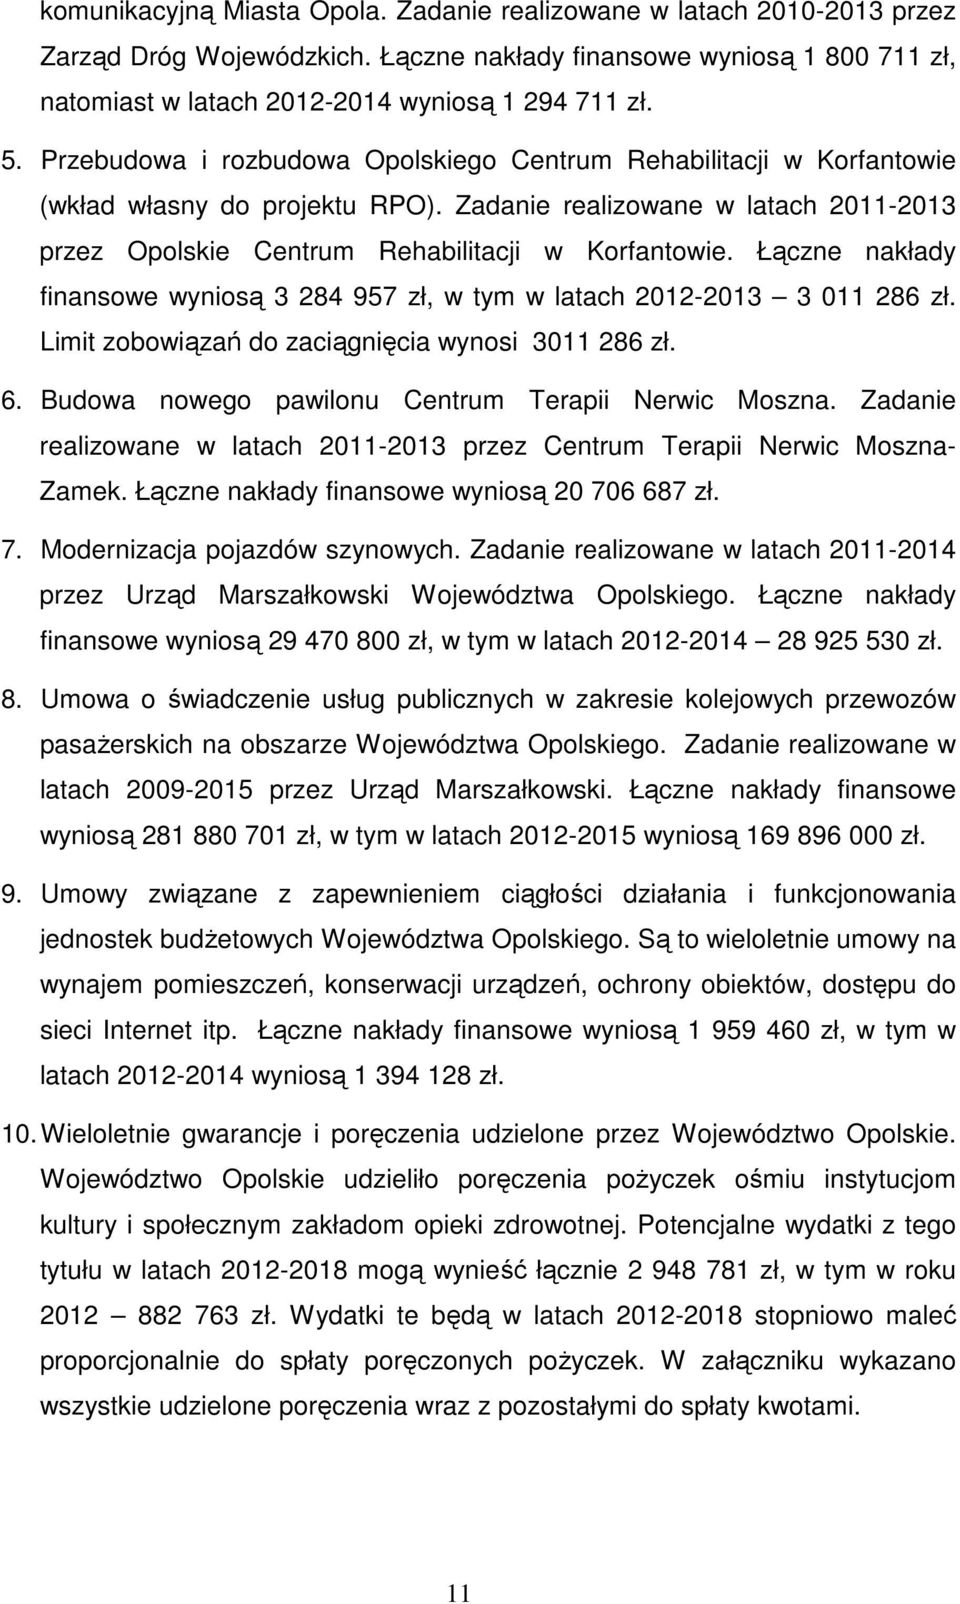 Łączne nakłady finansowe wyniosą 3 284 957 zł, w tym w latach 2012-2013 3 011 286 zł. Limit zobowiązań do zaciągnięcia wynosi 3011 286 zł. 6. Budowa nowego pawilonu Centrum Terapii Nerwic Moszna.